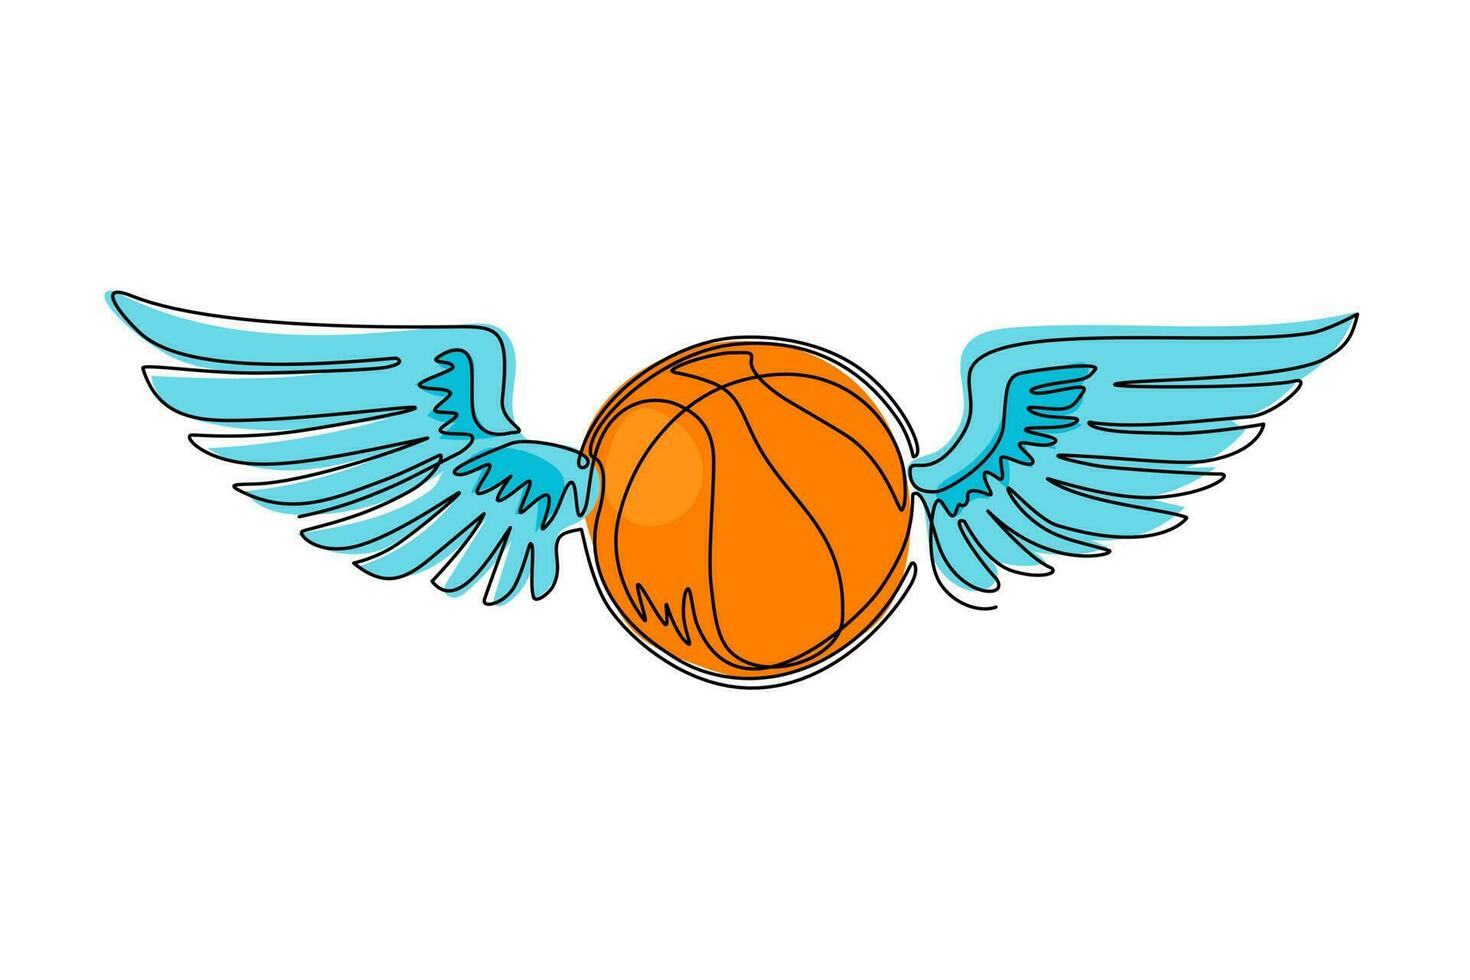 enda kontinuerlig linjeteckning flygande basketboll med vingar. basket emblem. flygande boll. svart och vit kontur. logotyp för spelet och laget. dynamisk en rad rita design vektorillustration vektor